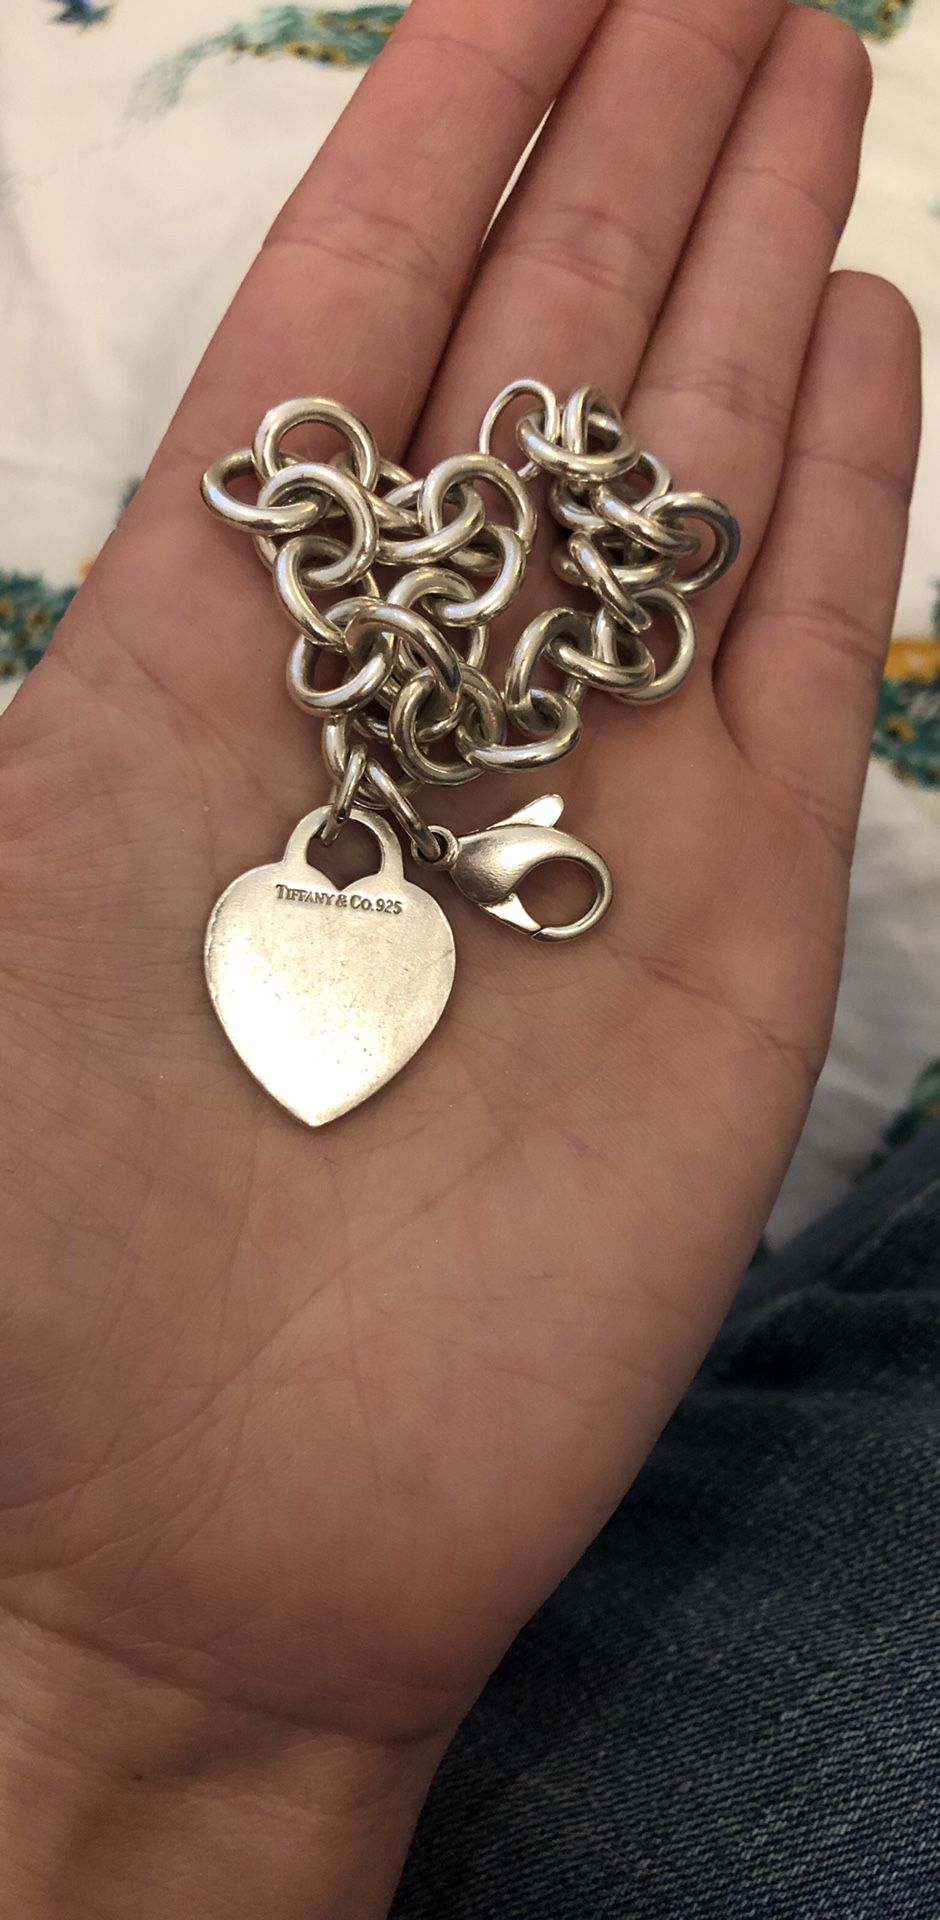 Tiffany’s Co. Classic Sterling Silver Heart Bracelet